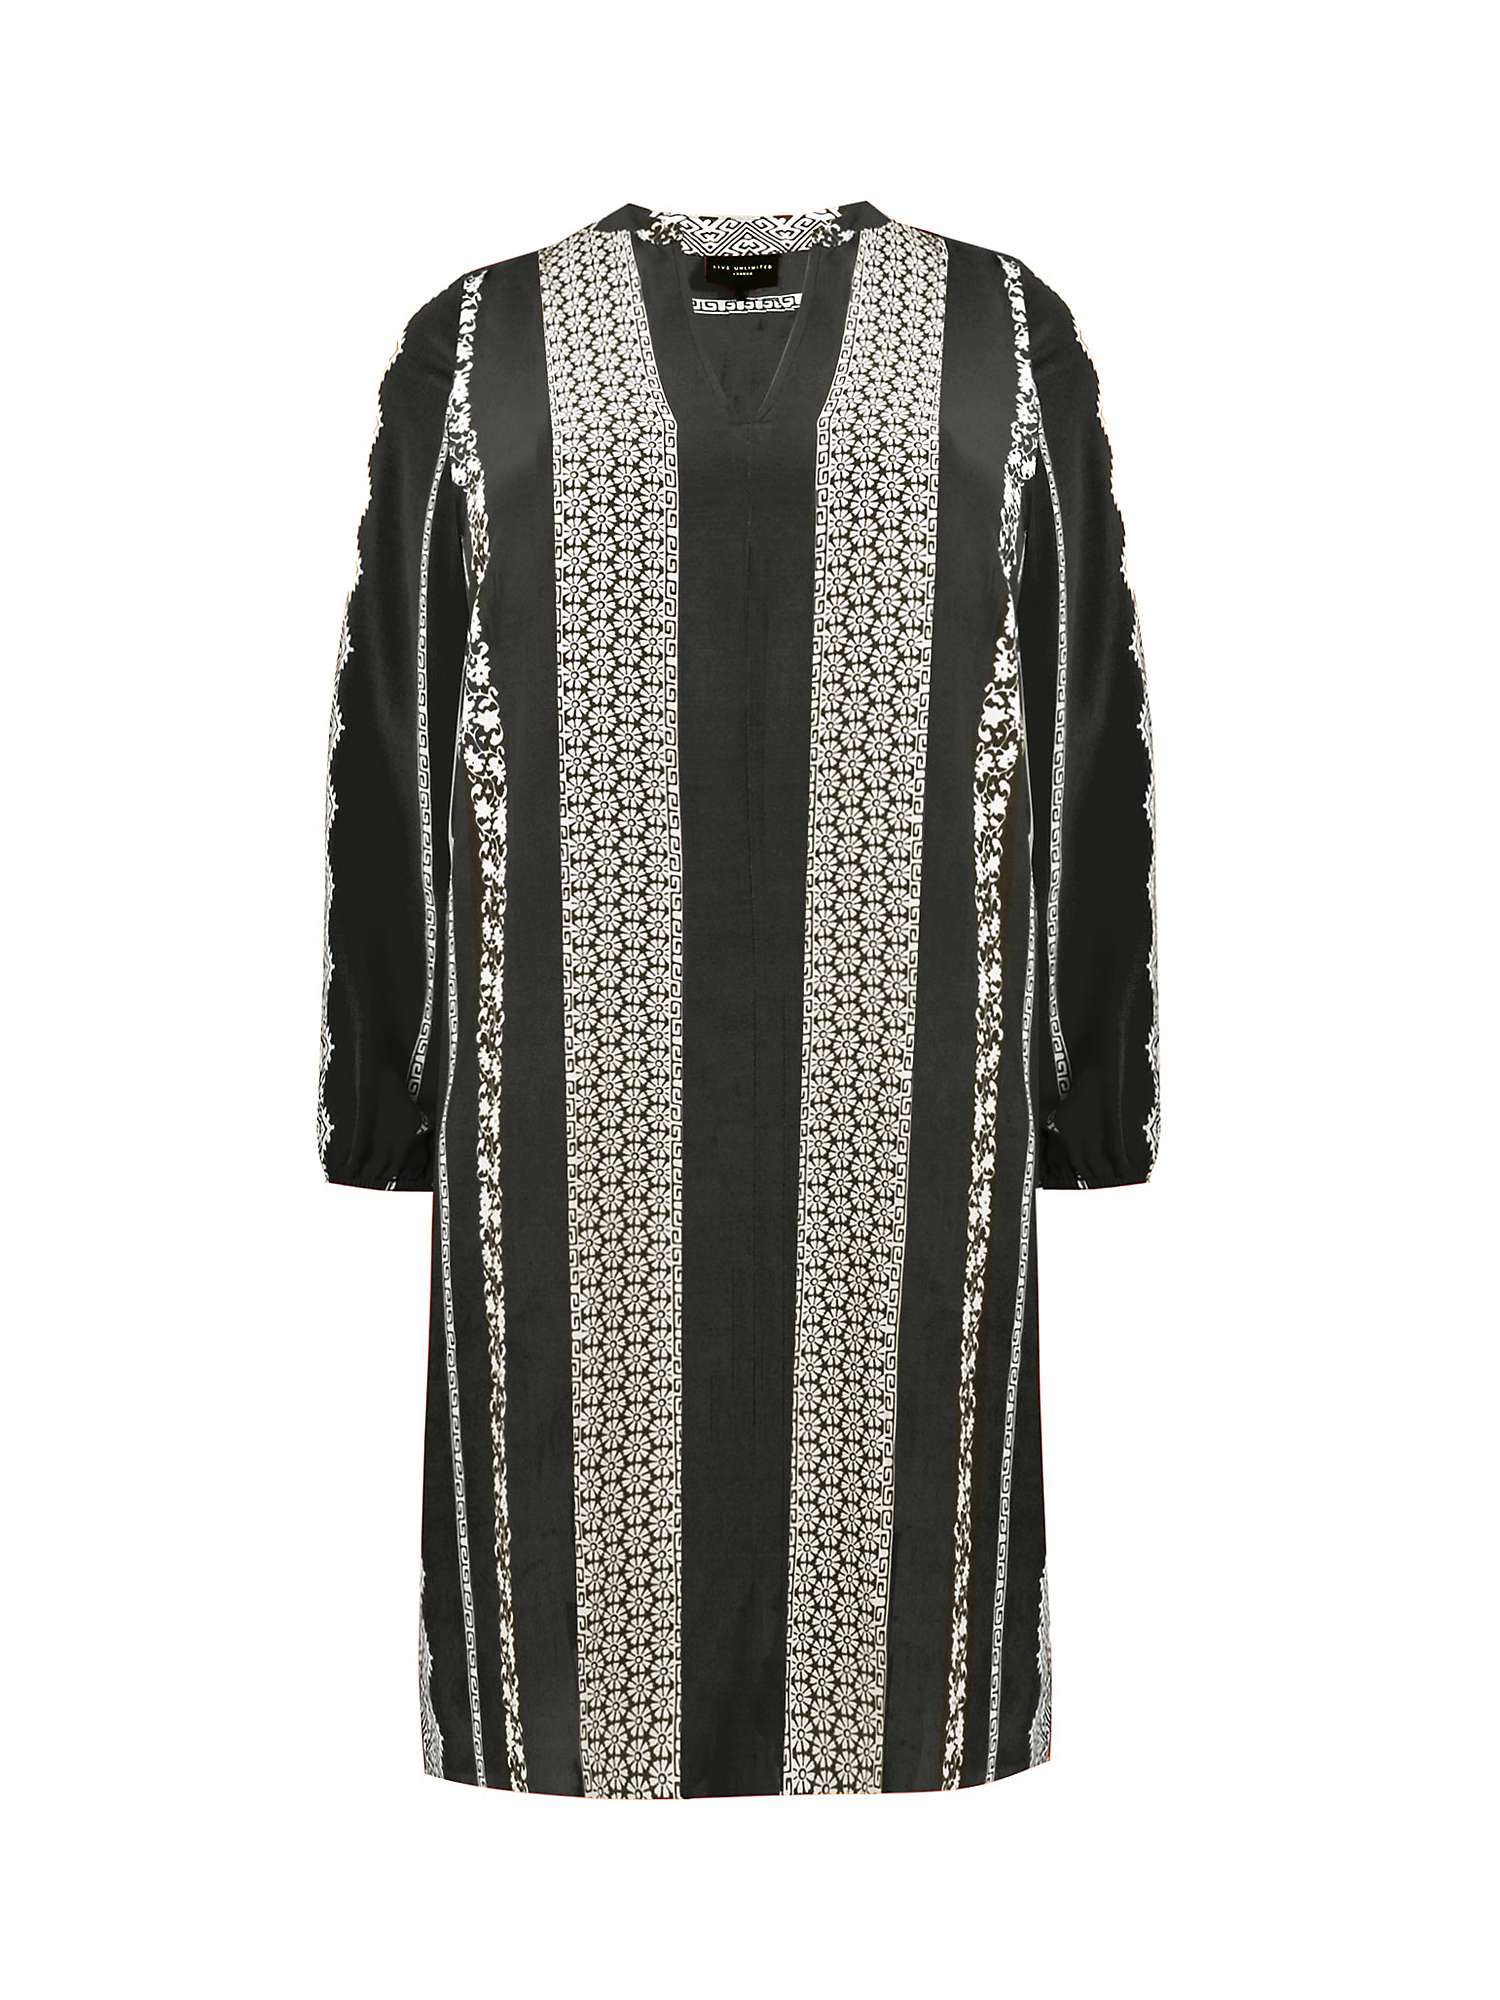 Buy Live Unlimited Curve Batik Stripe Placement Print Dress, Black/Multi Online at johnlewis.com